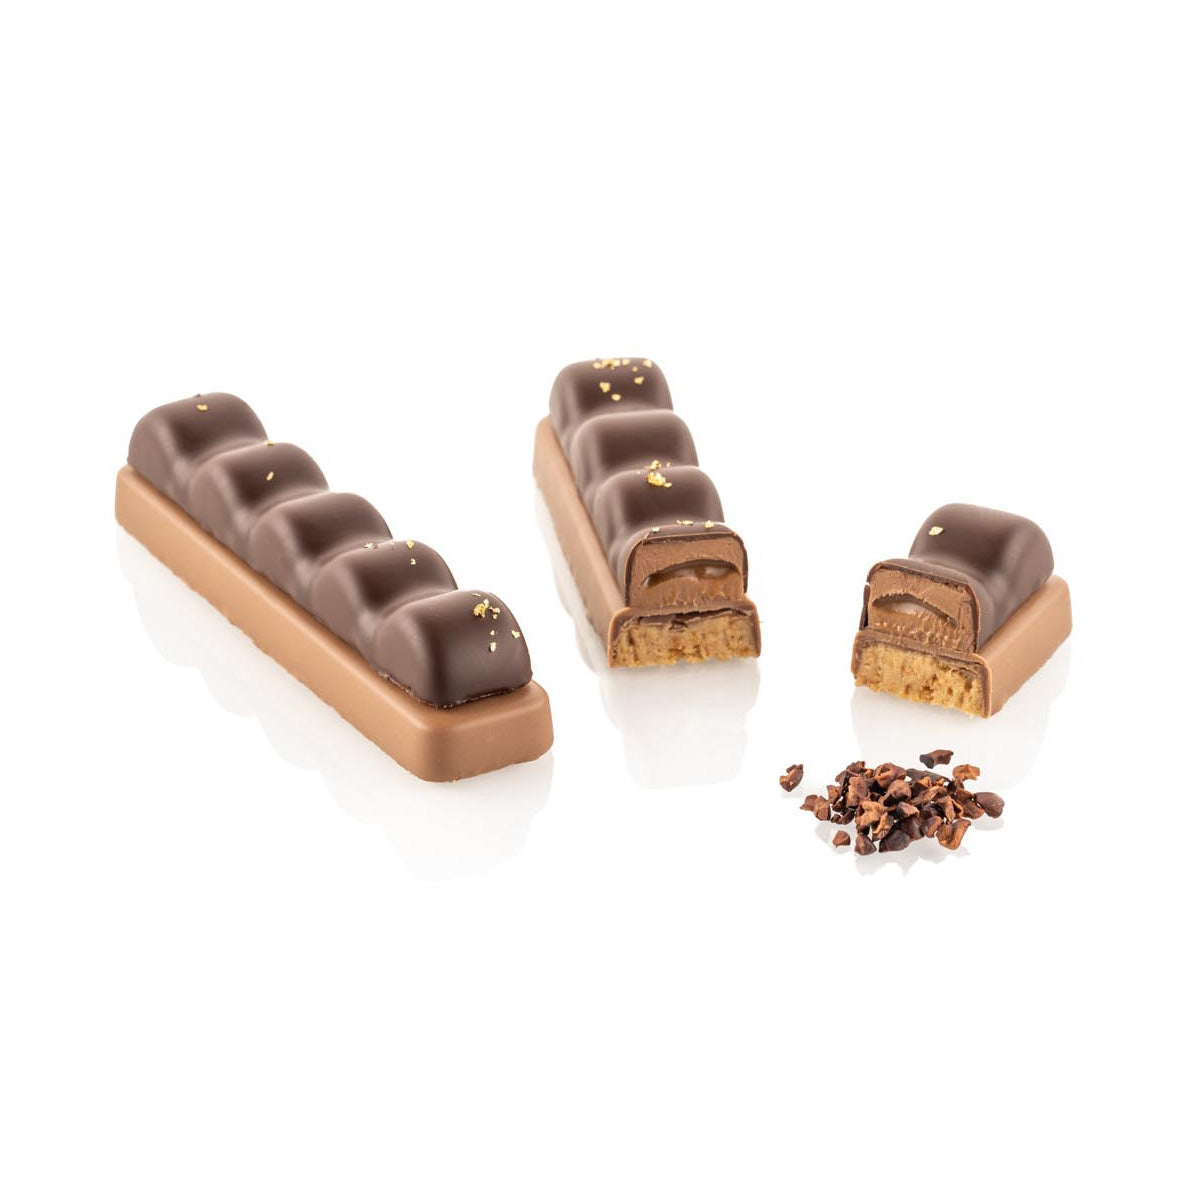 SILIKOMART Bar Duna Tritan Chocolate Mould Kit, Snack Bar